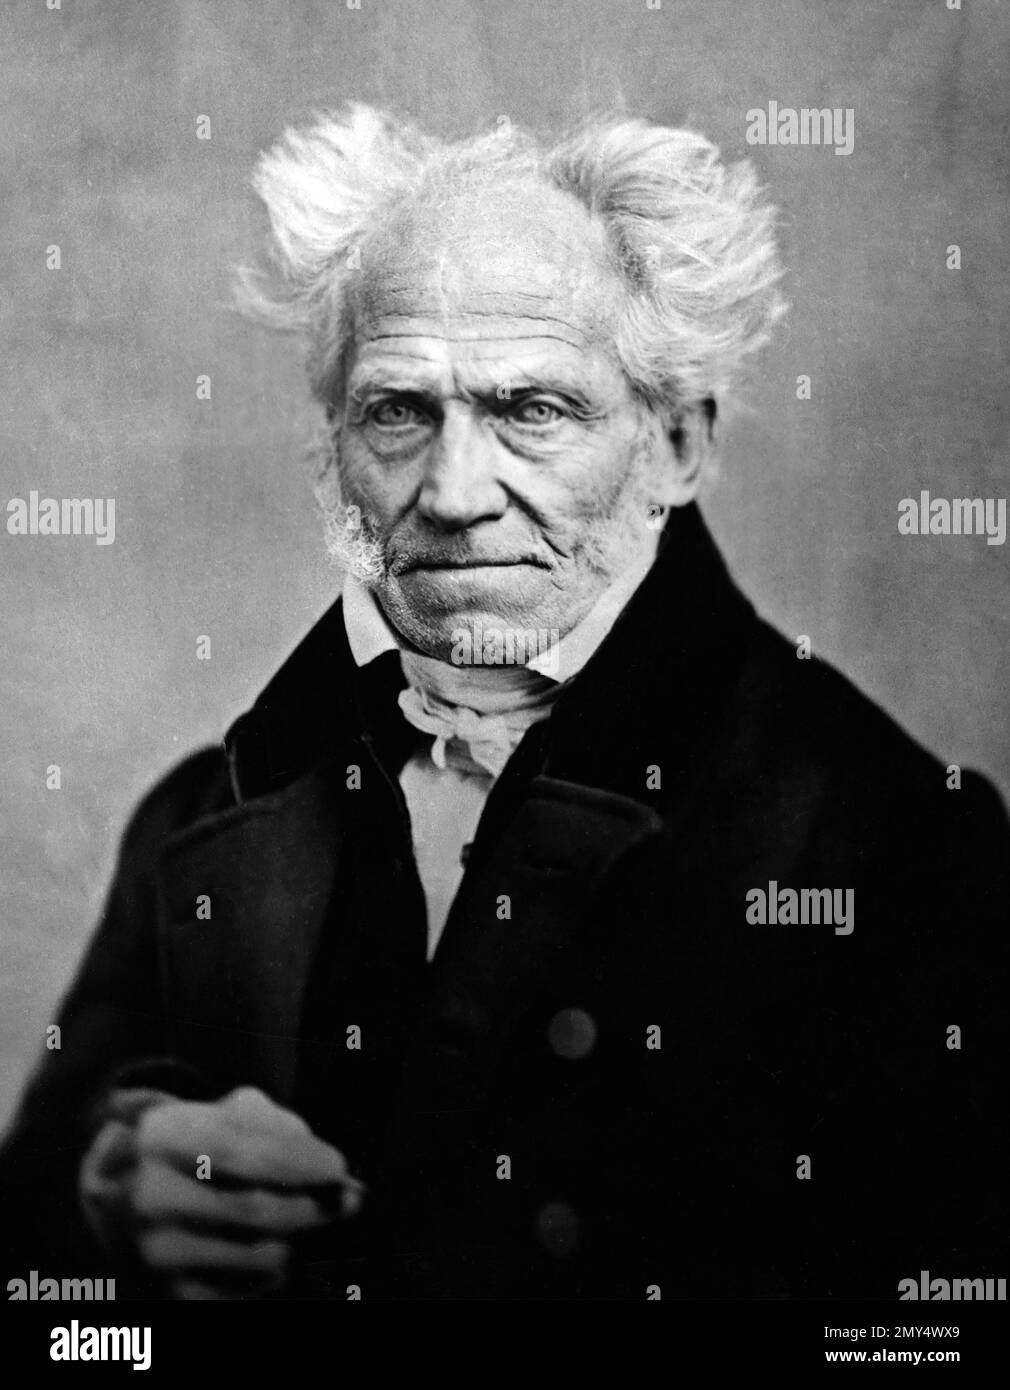 Schopenhauer. Portrait of the German philosopher, Arthur Schopenhauer (1788-1860) by Johann Schäfer, 1859 Stock Photo